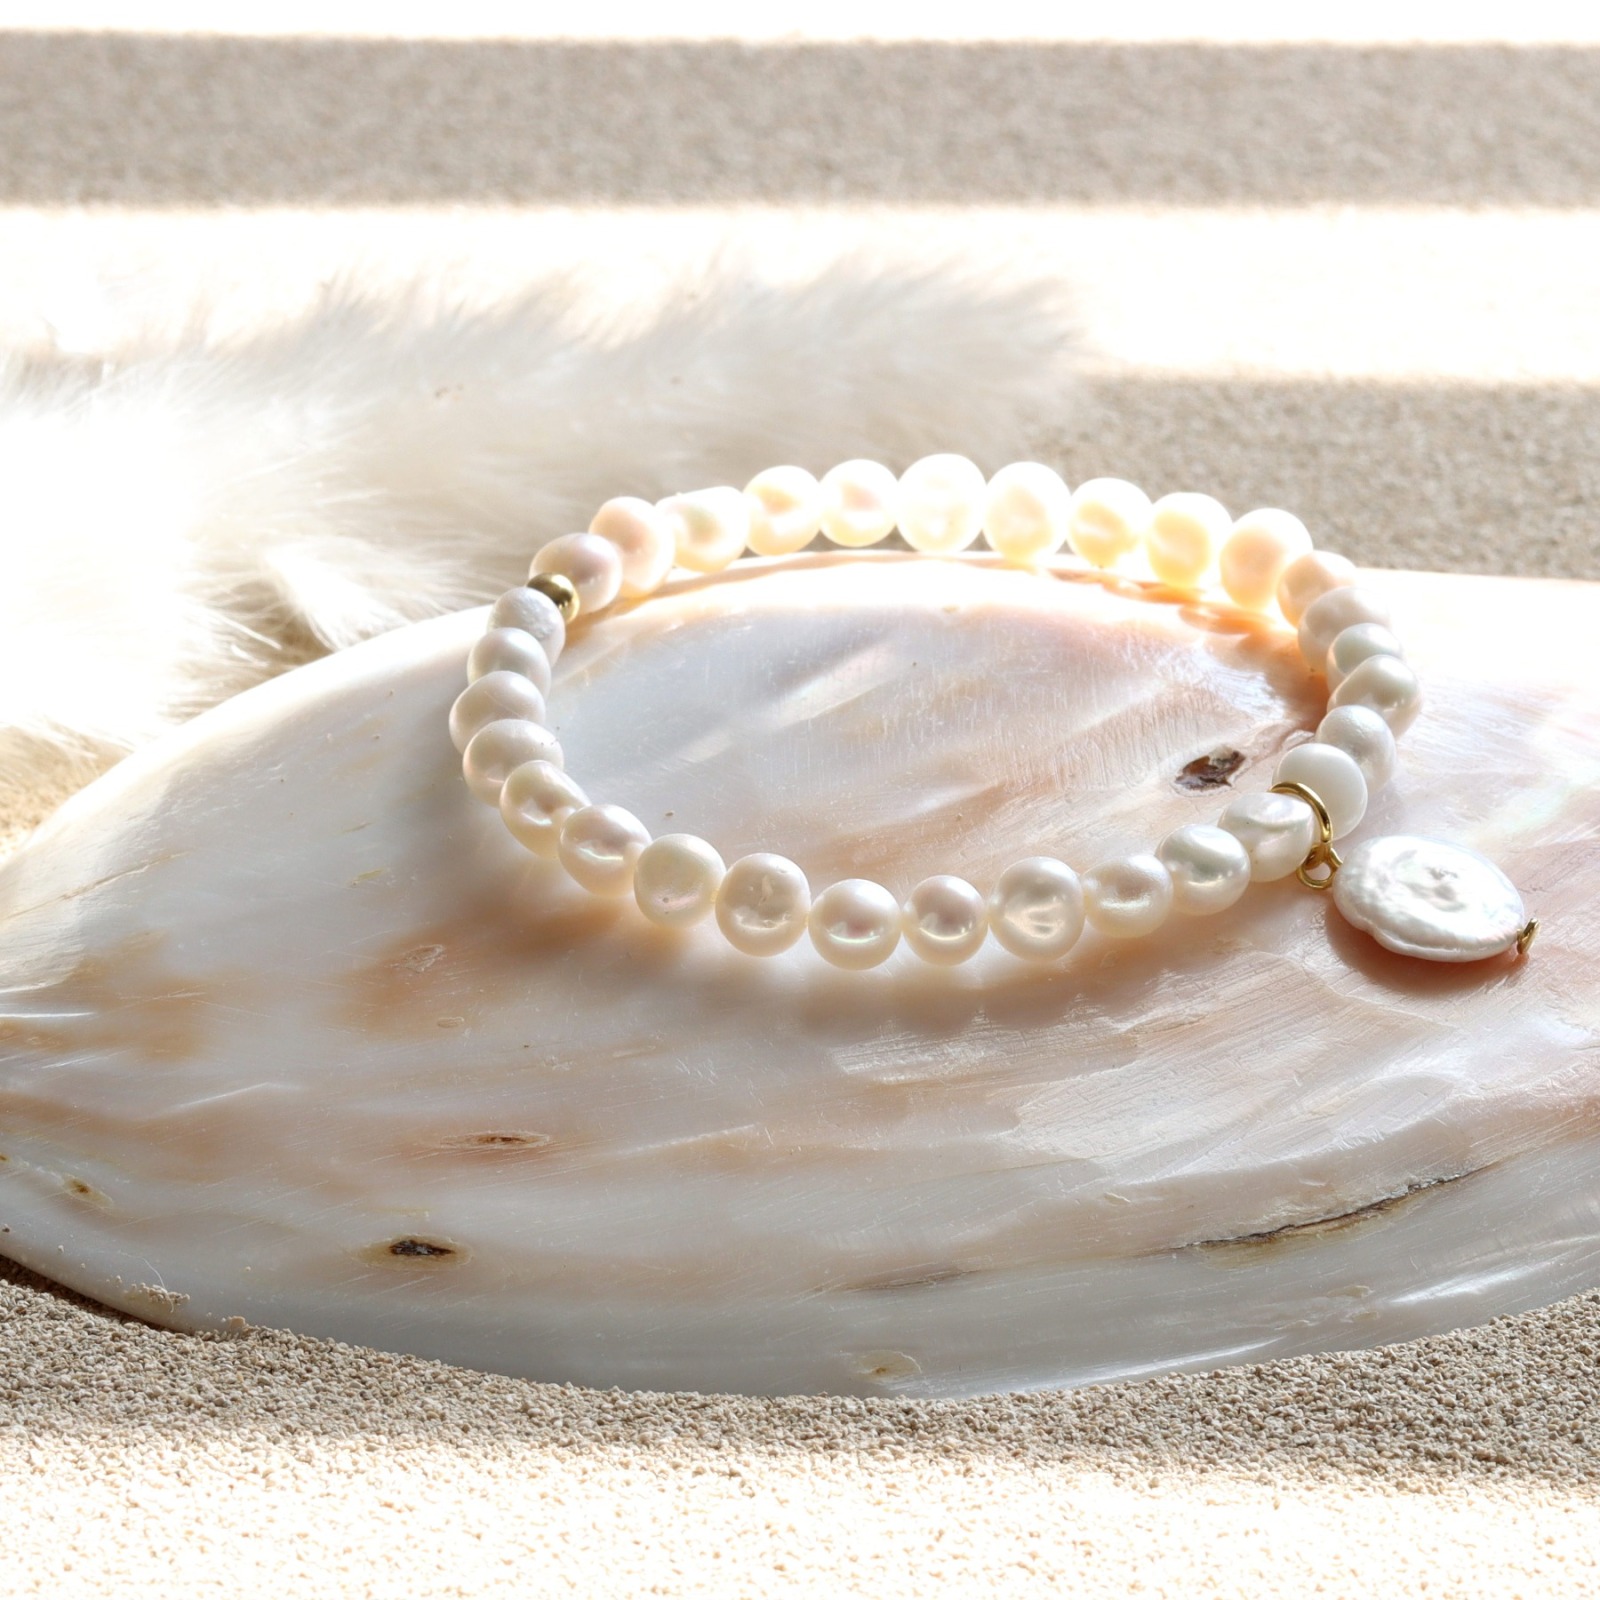 Armband aus echten Perlen mit Coin-Perle 6